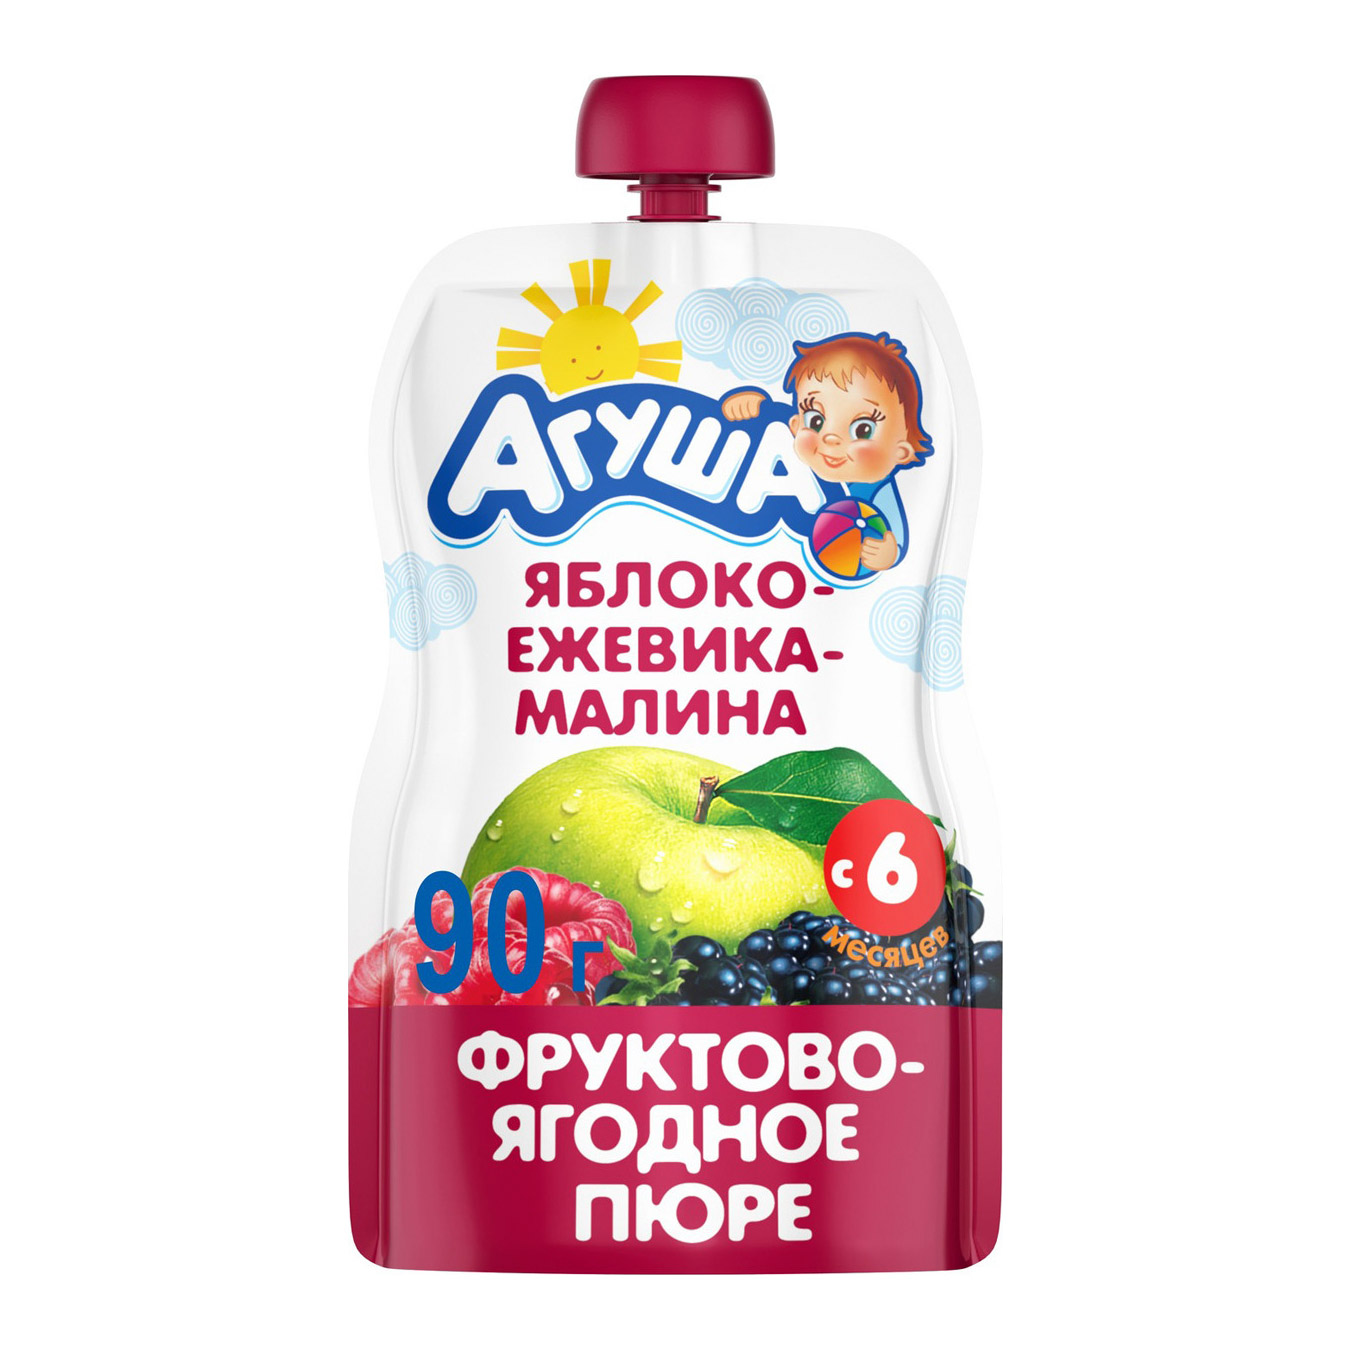 Пюре фруктово-ягодное Агуша Яблоко-Ежевика-Малина 90 г пюре агуша яблоко малина шиповник с 5 месяцев 90 г 1шт